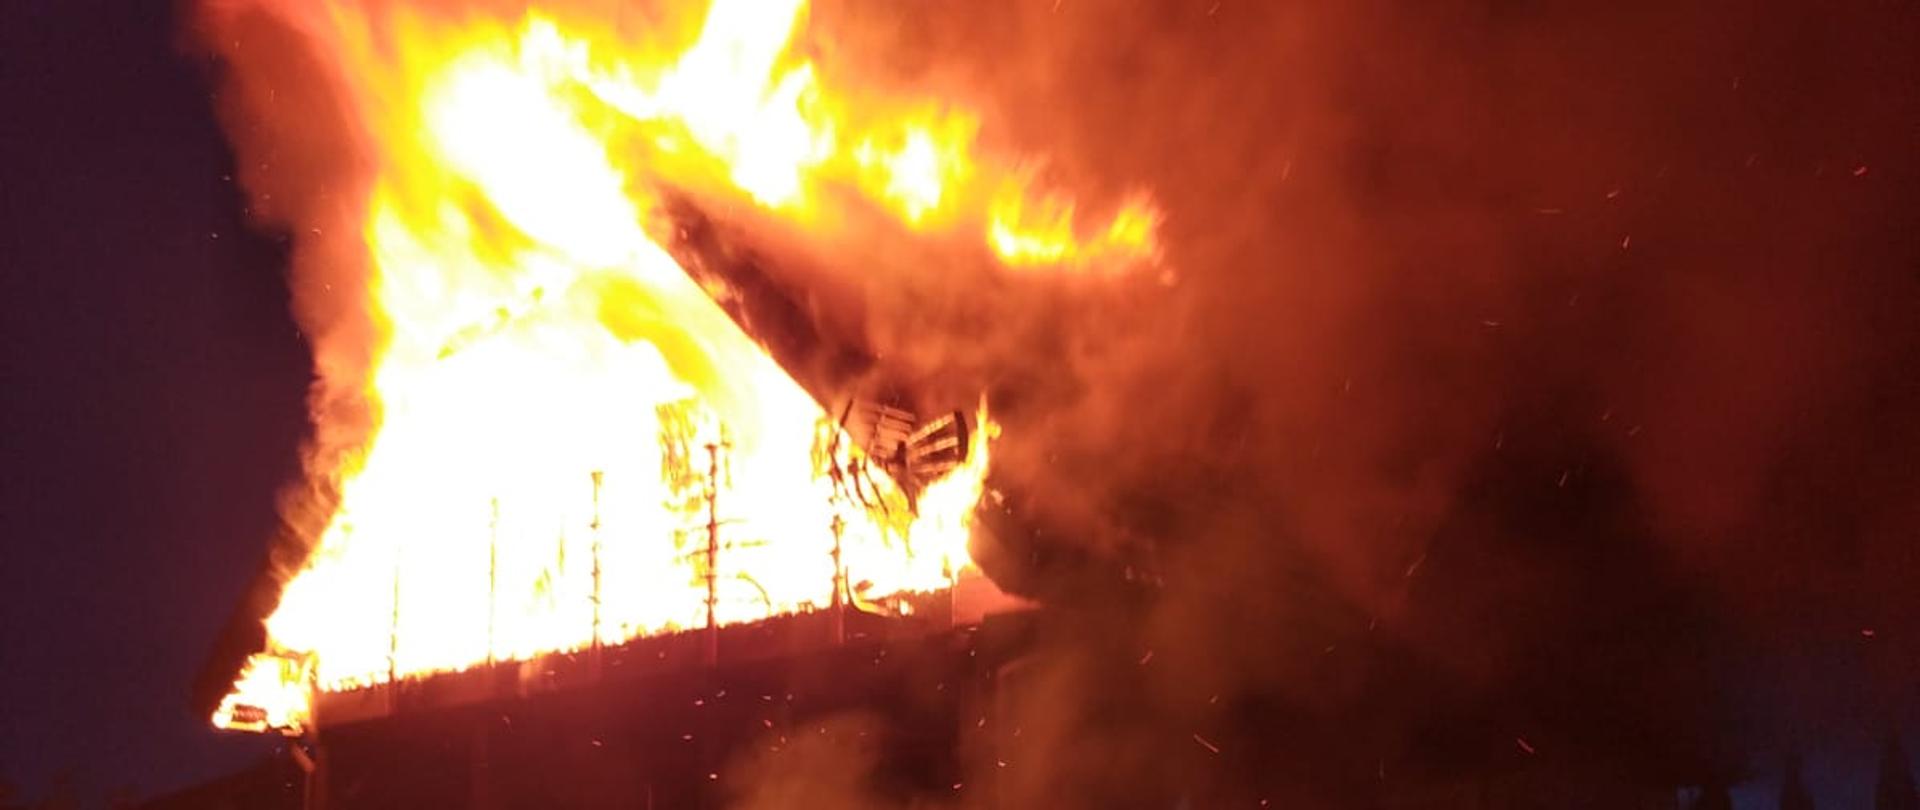 Pożar domu letniskowego w Polskiej Wsi koło Mrągowa, pali się dach domu